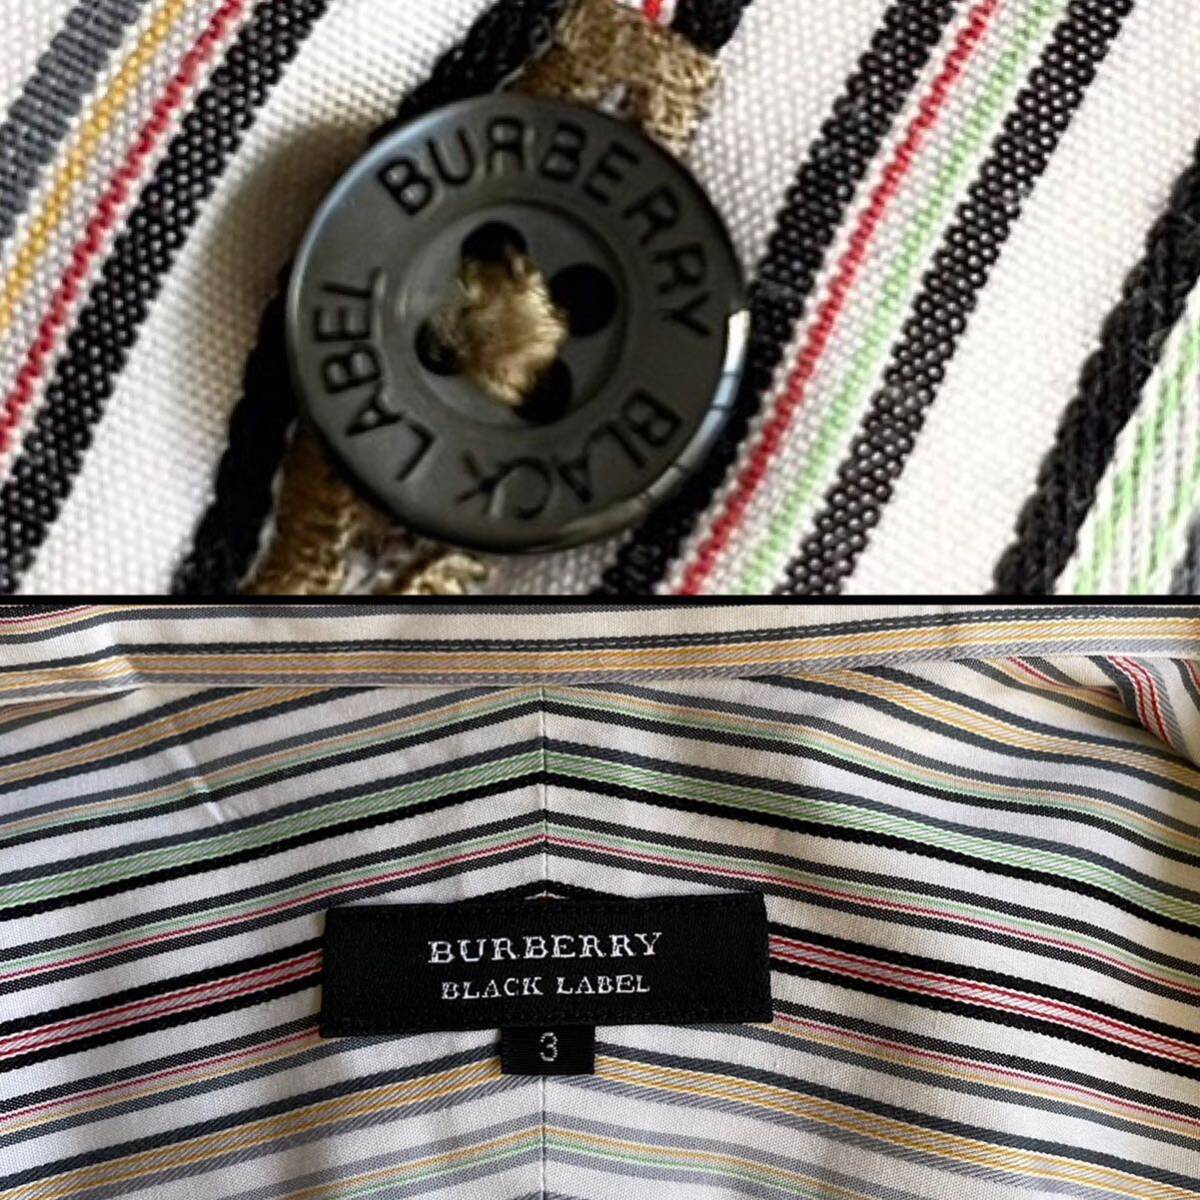  прекрасный товар редкий 3|L! Burberry Black Label рубашка BD длинный рукав шланг вышивка полоса [ подавляющий джентльмен чувство ] BURBERRY BLACK LABEL многоцветный 